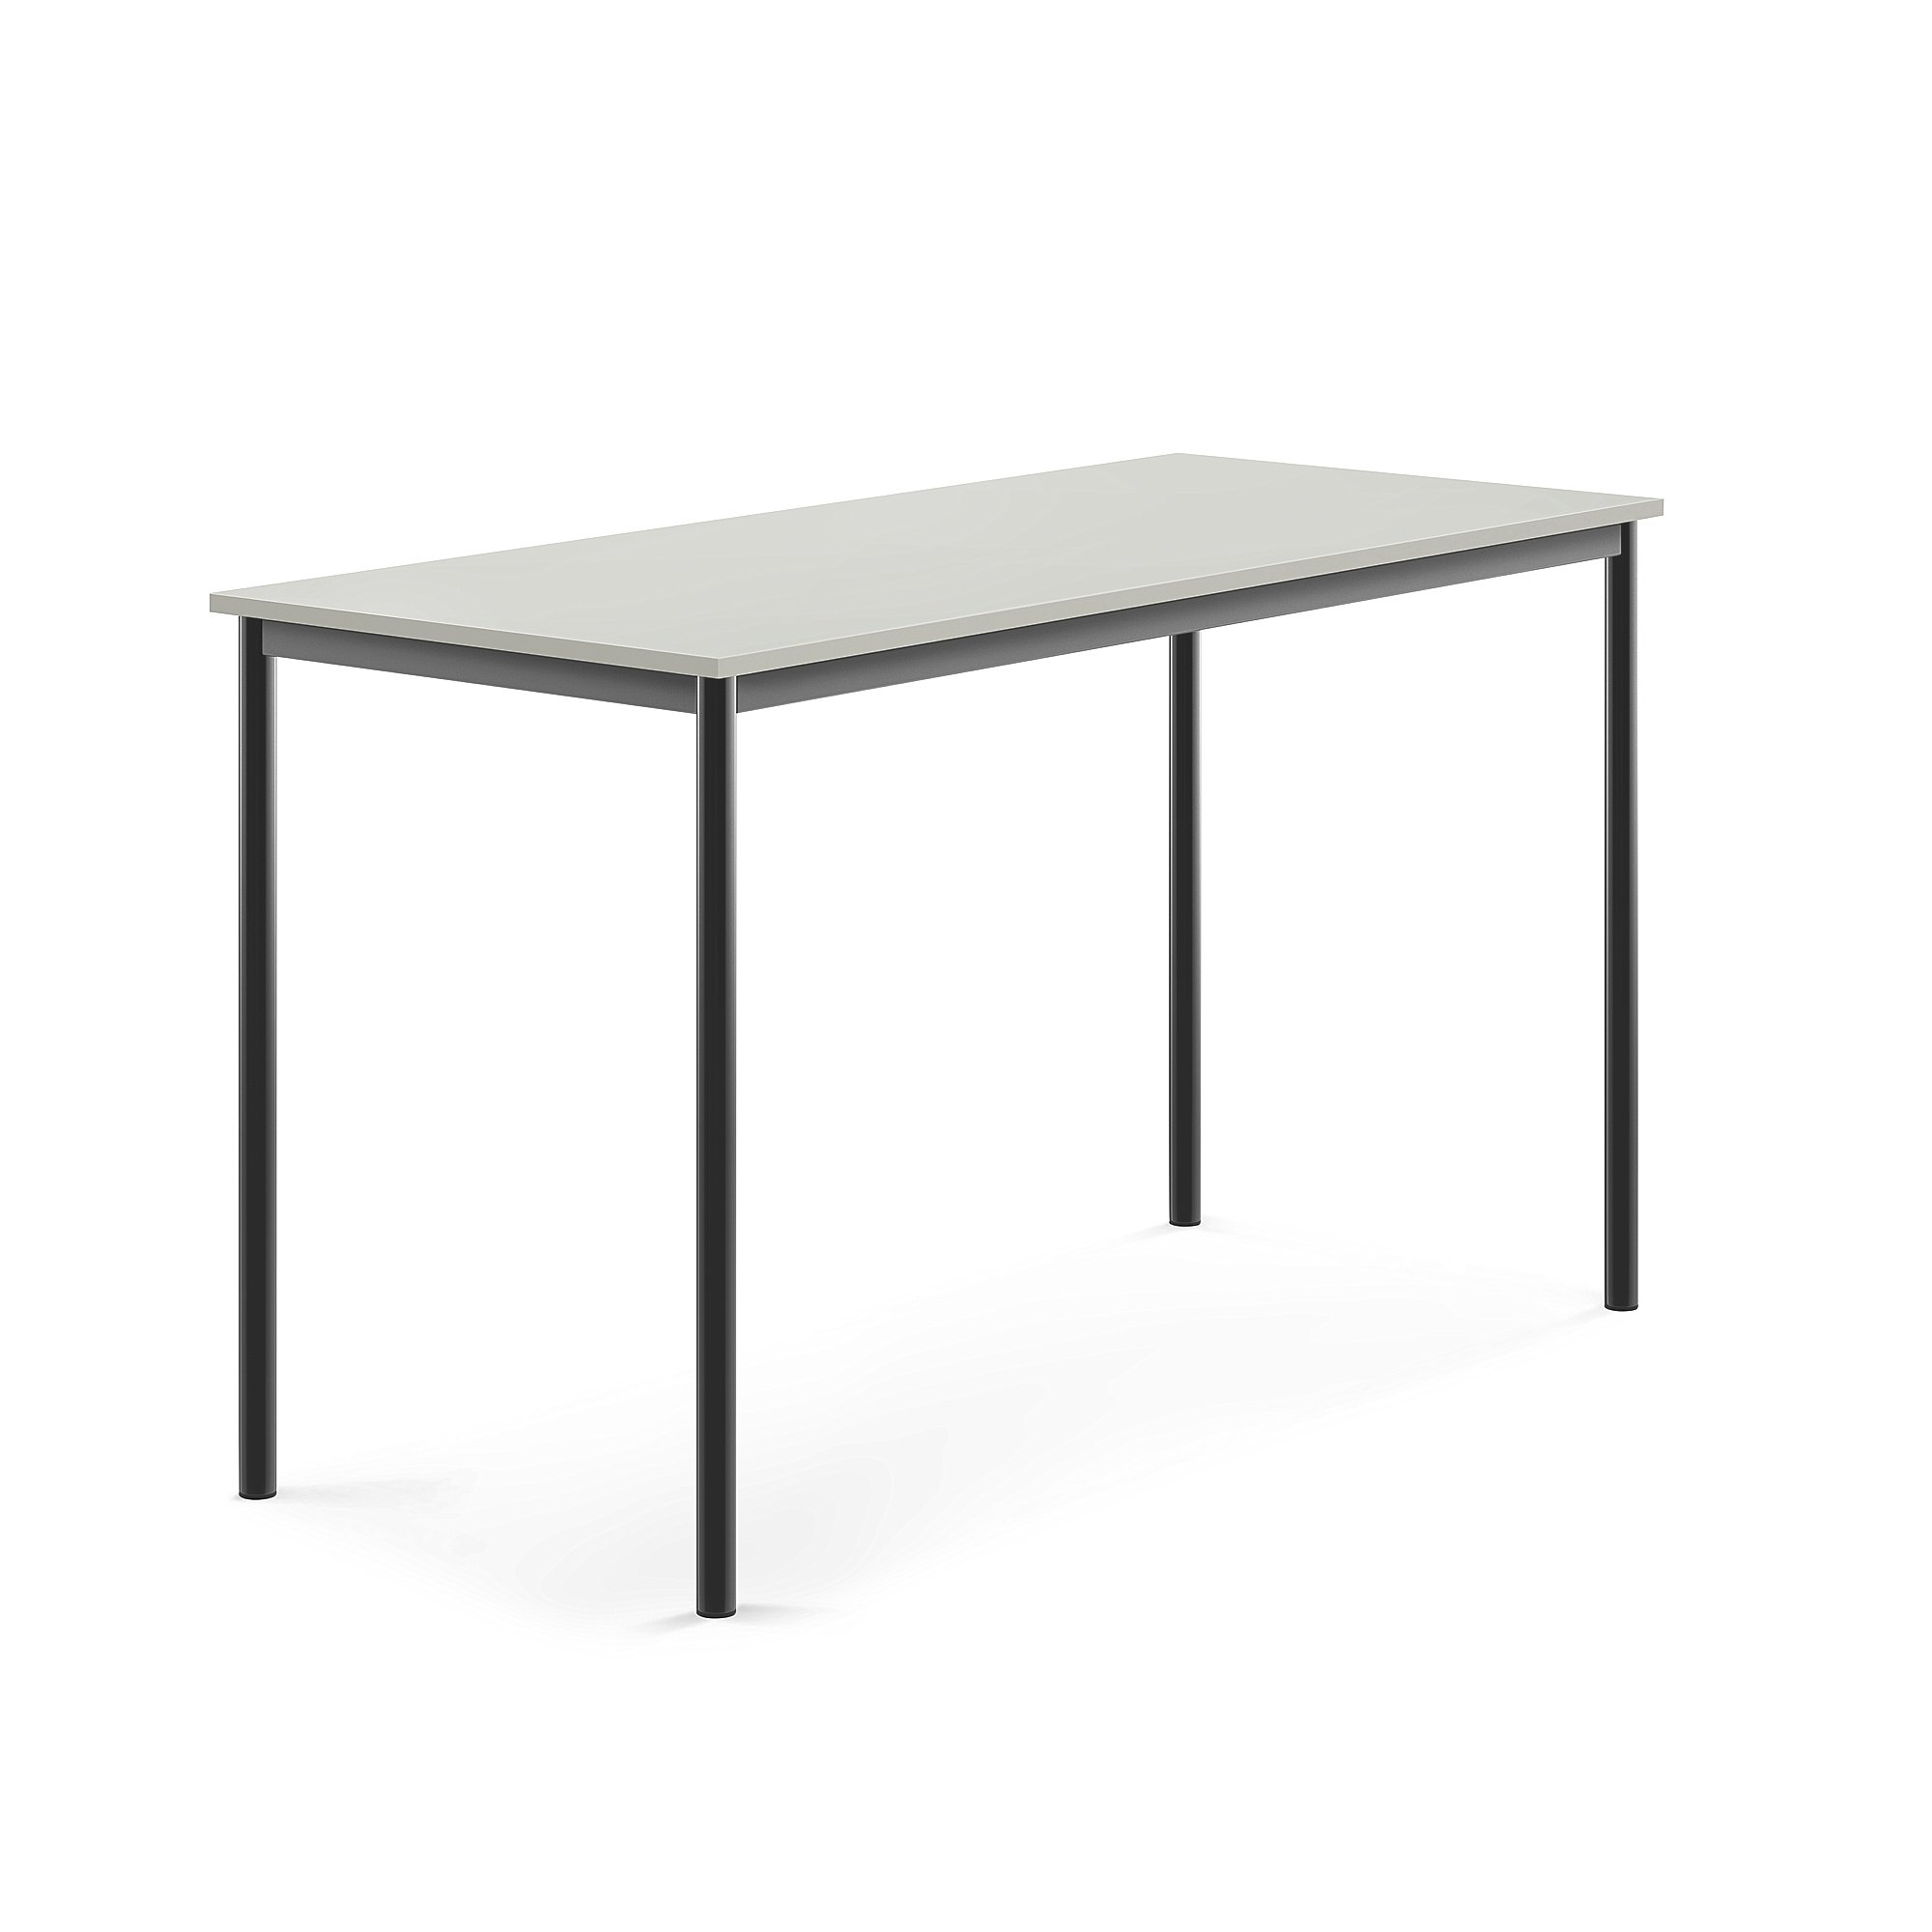 Stůl BORÅS, 1600x700x900 mm, antracitově šedé nohy, HPL deska, šedá